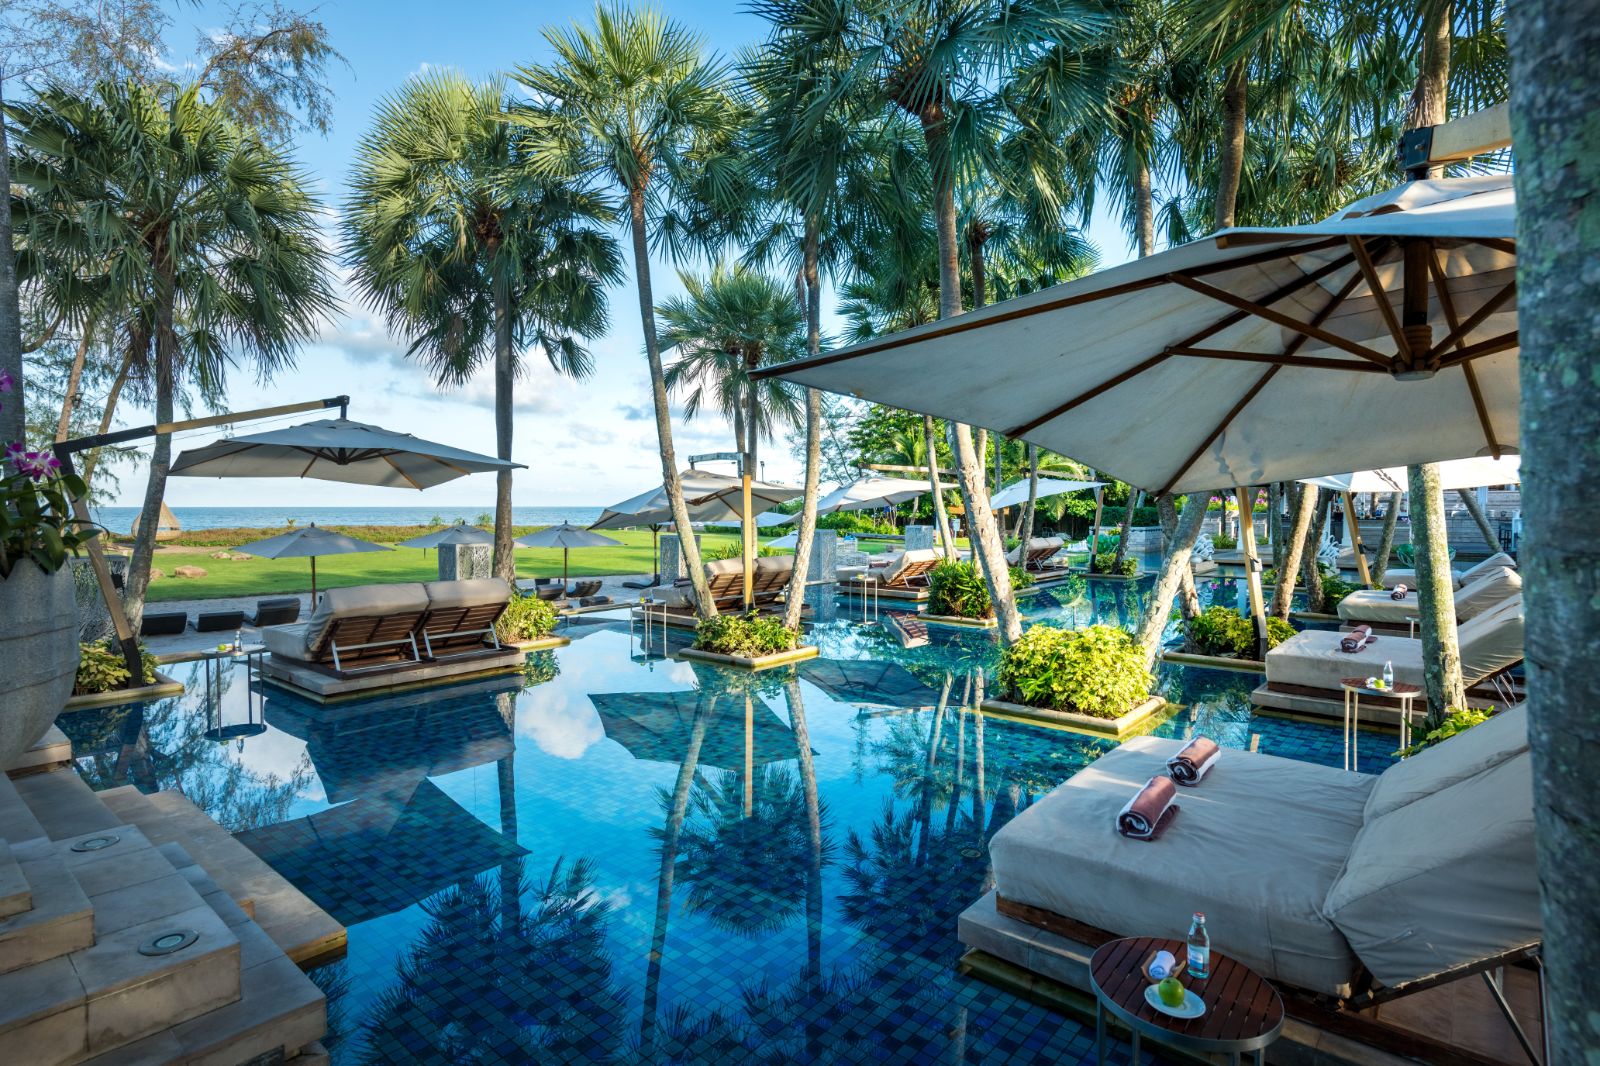 Pool and sunbeds at Anantara Mai Khao Phuket Villas in Thailand